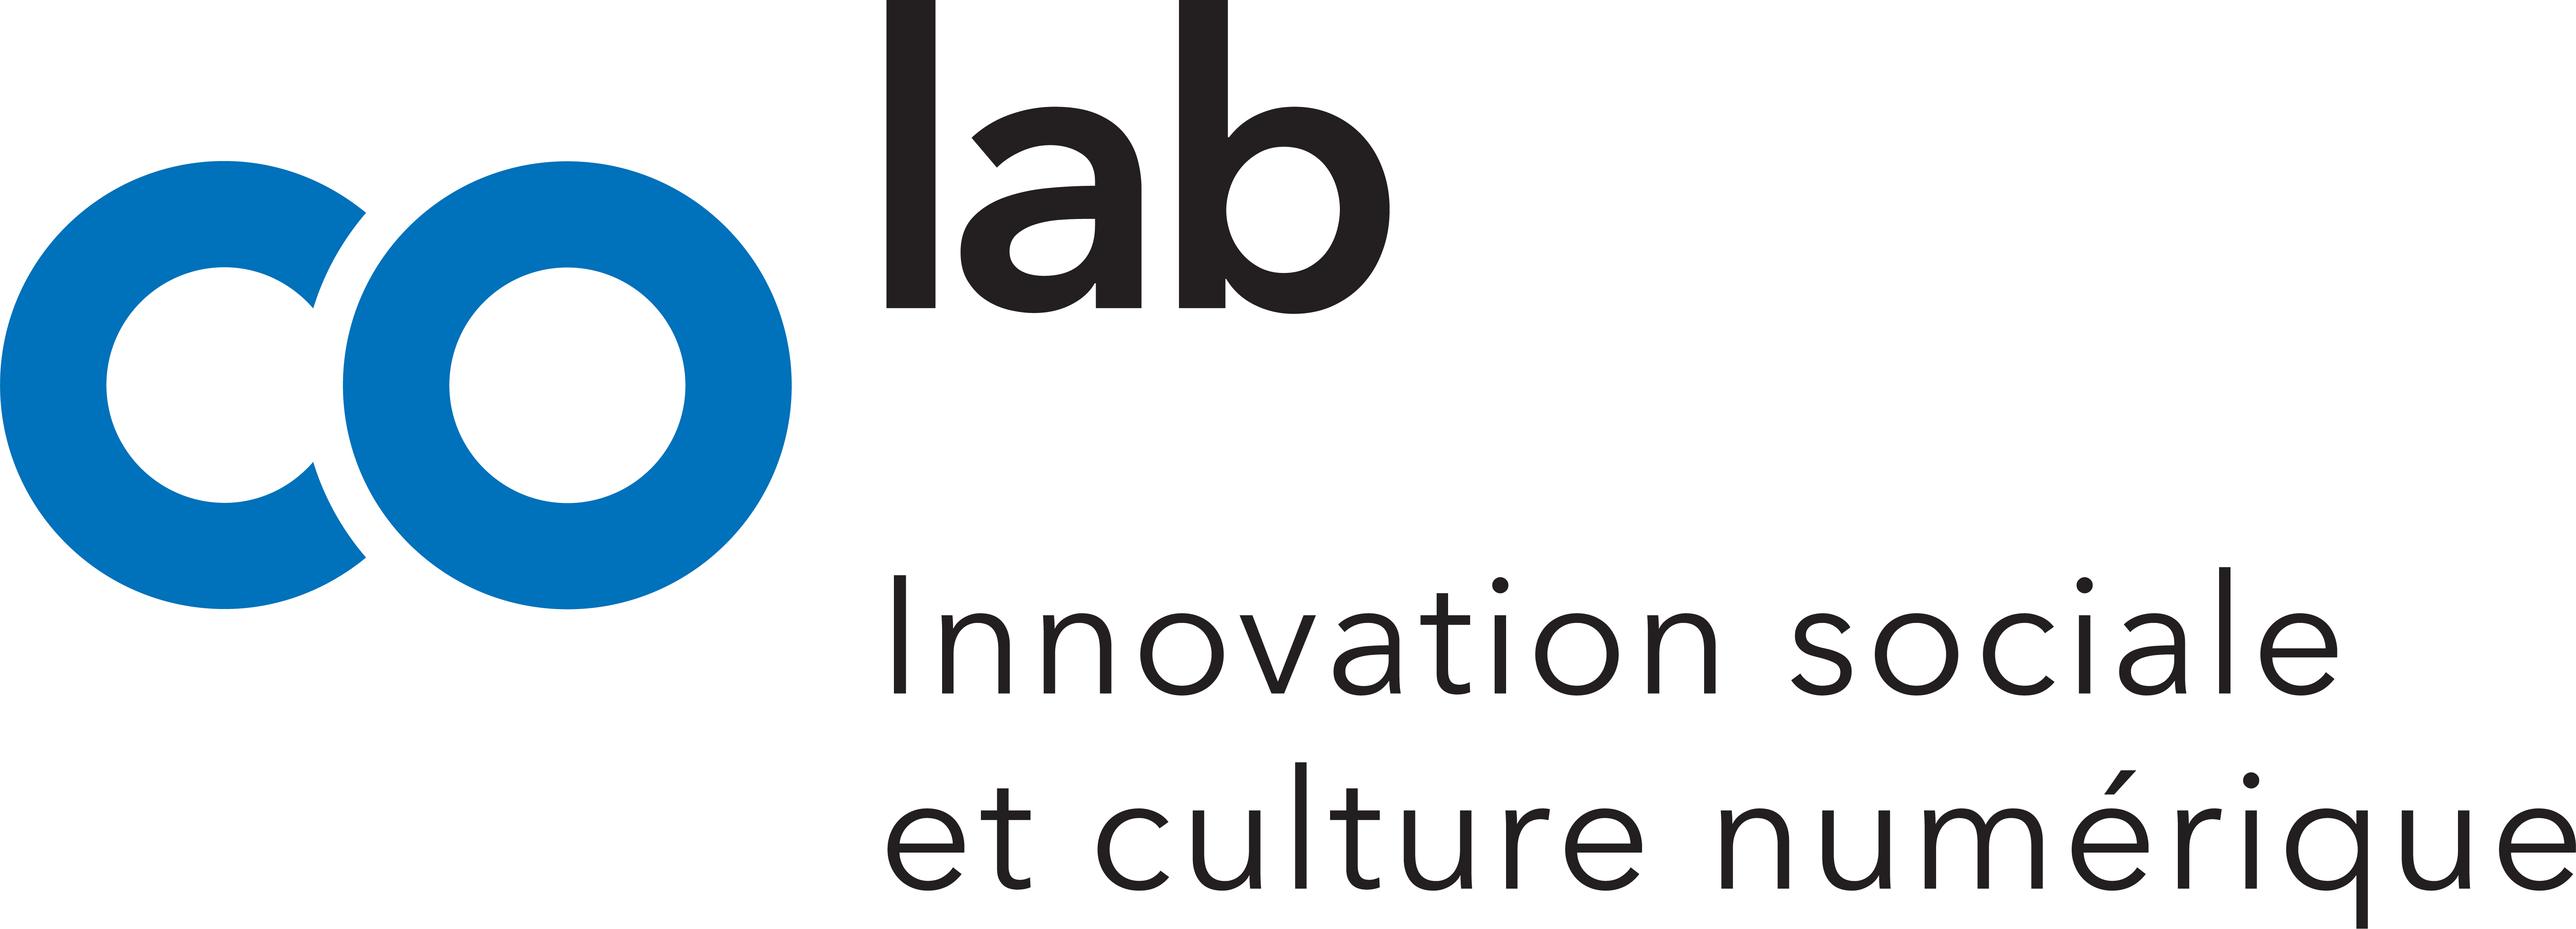 COlab innovation sociale et culture numérique